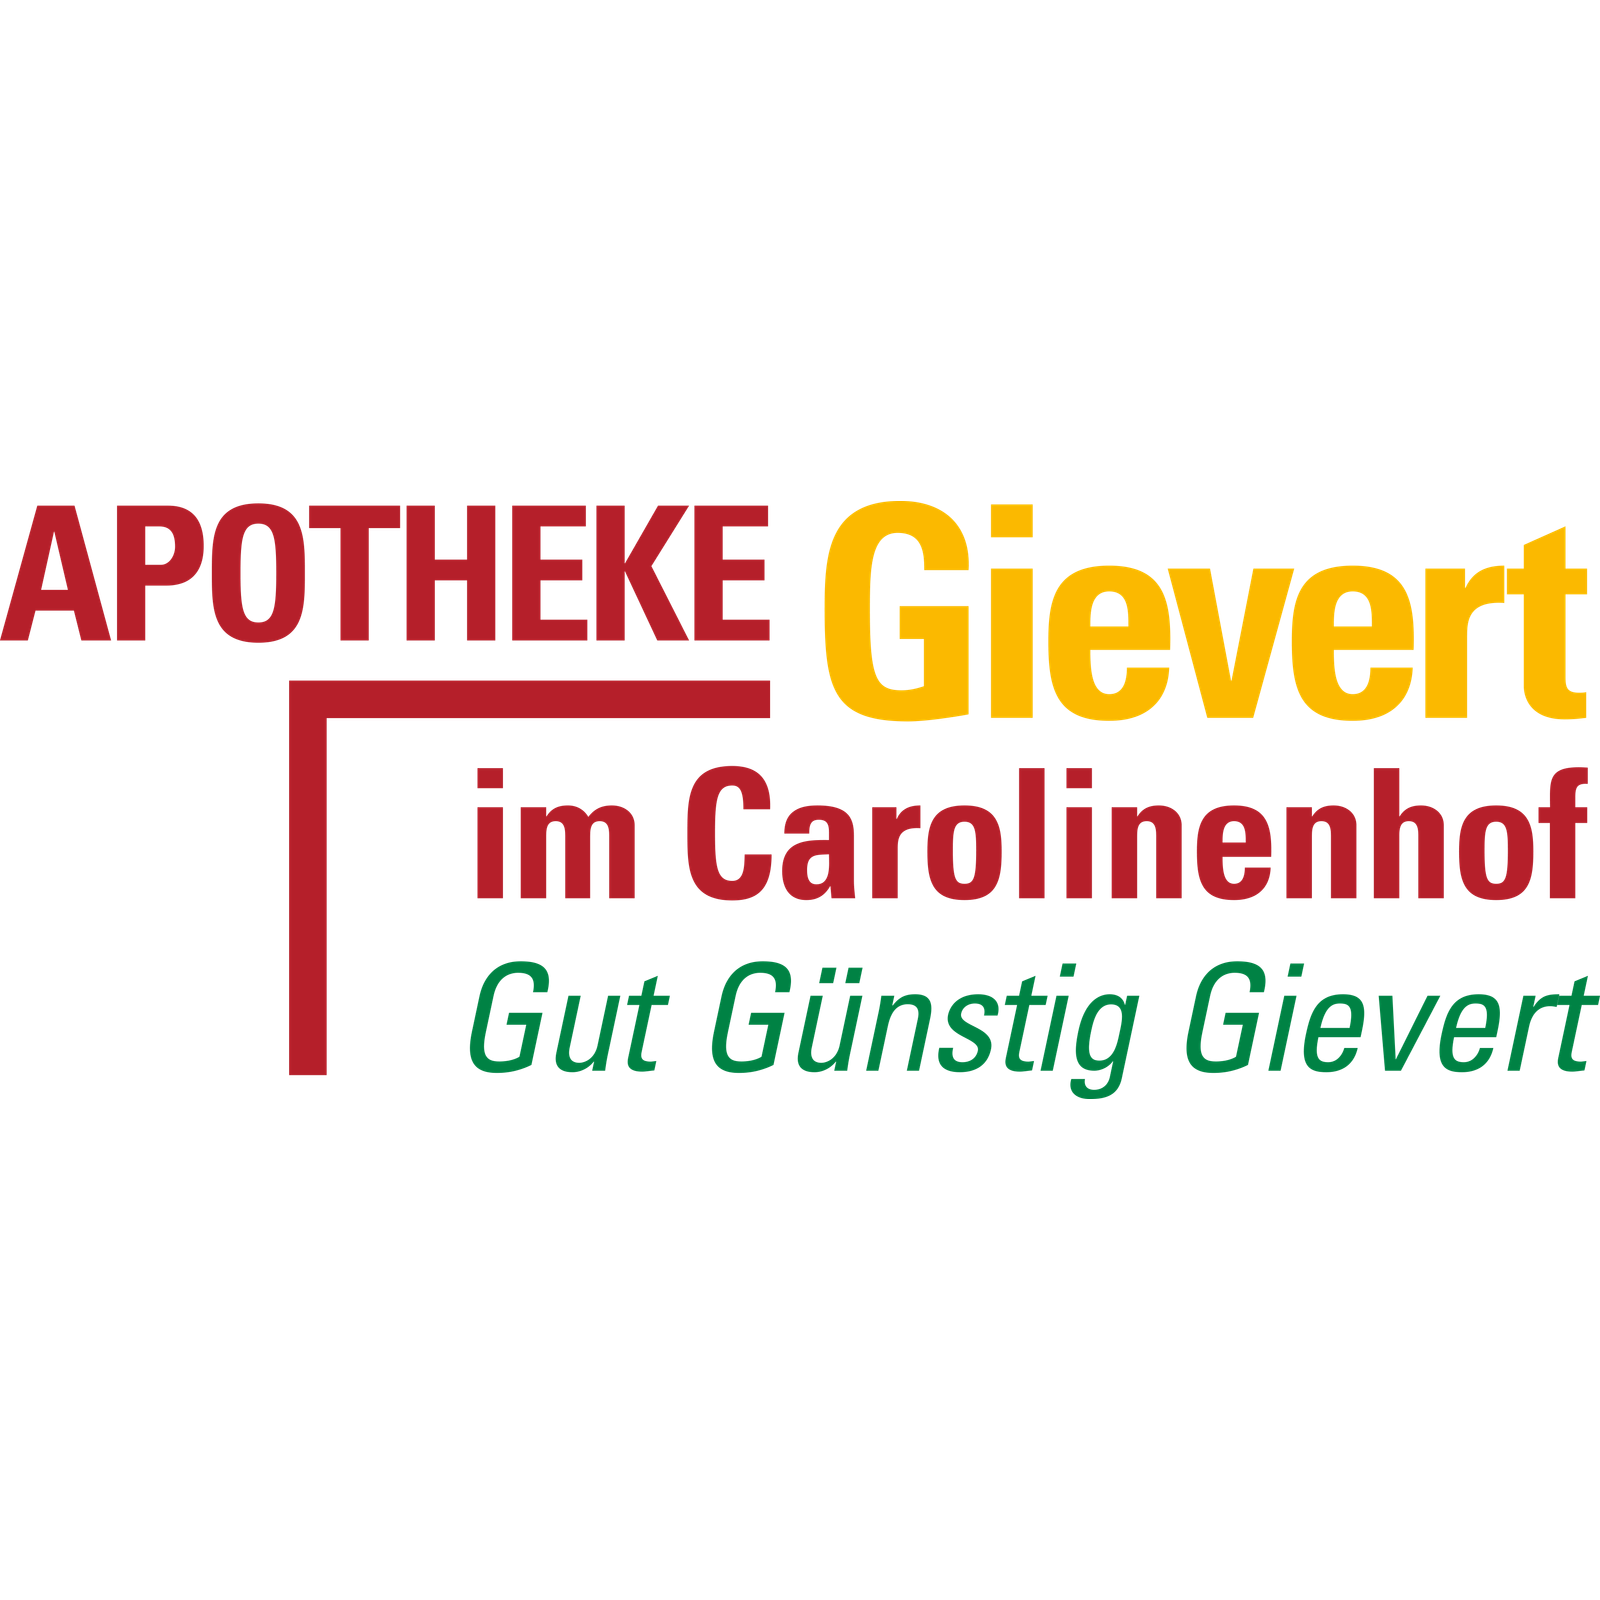 Apotheke Gievert im Carolinenhof in Aurich in Ostfriesland - Logo